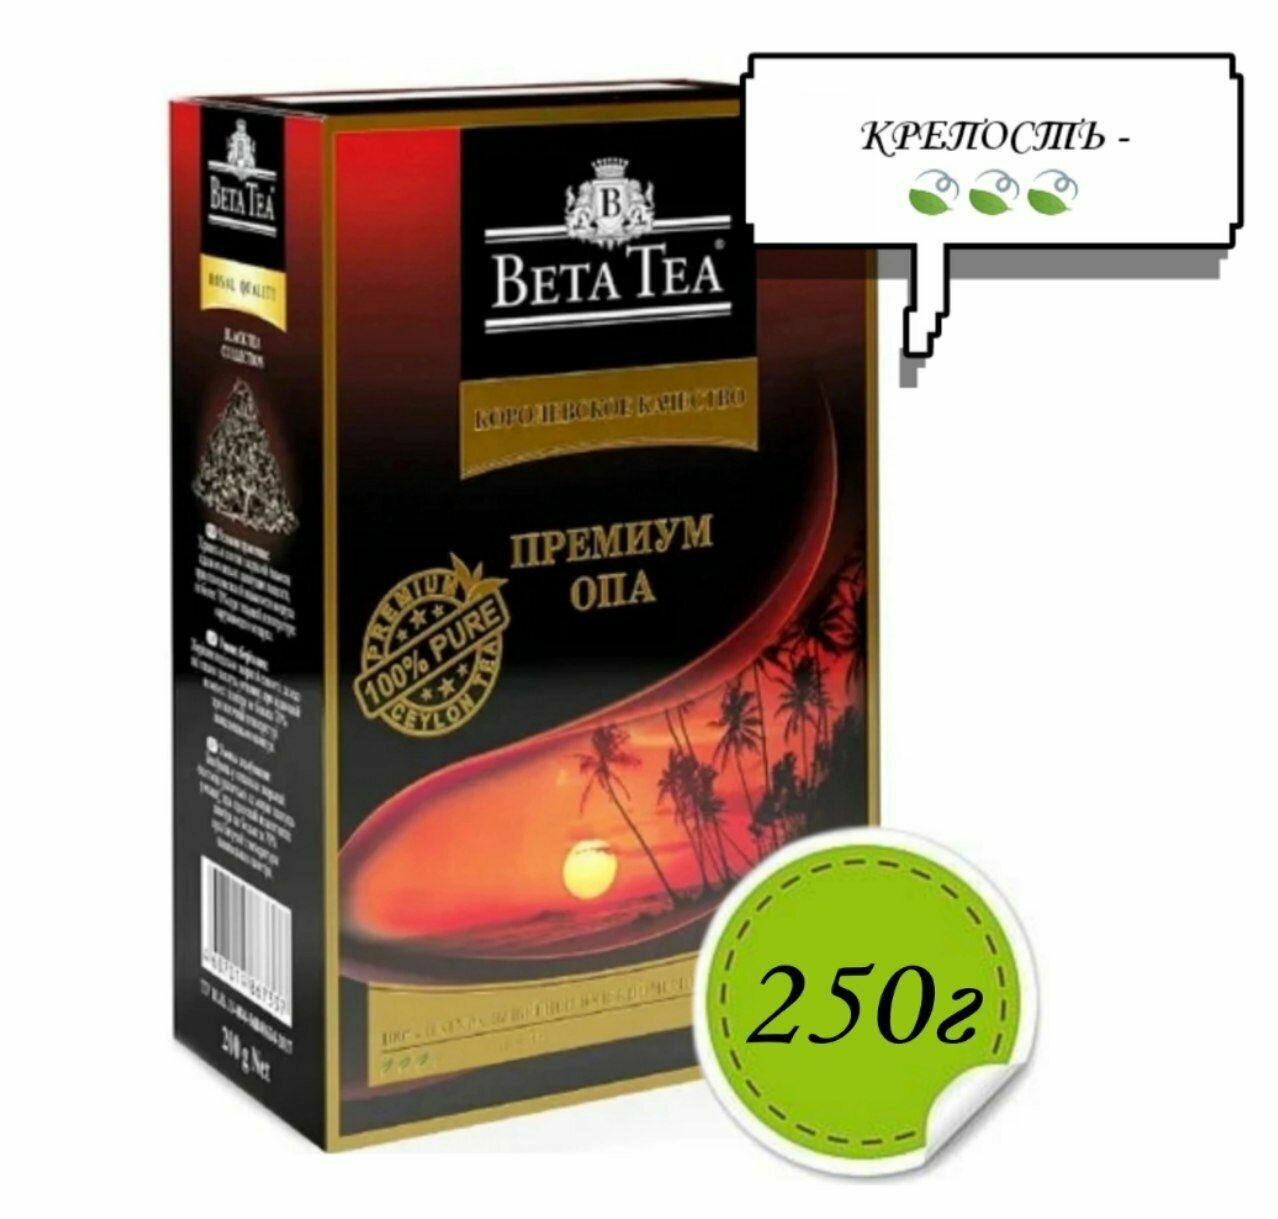 Черный чай BETA TEA Премиум ОПА 250г*1шт